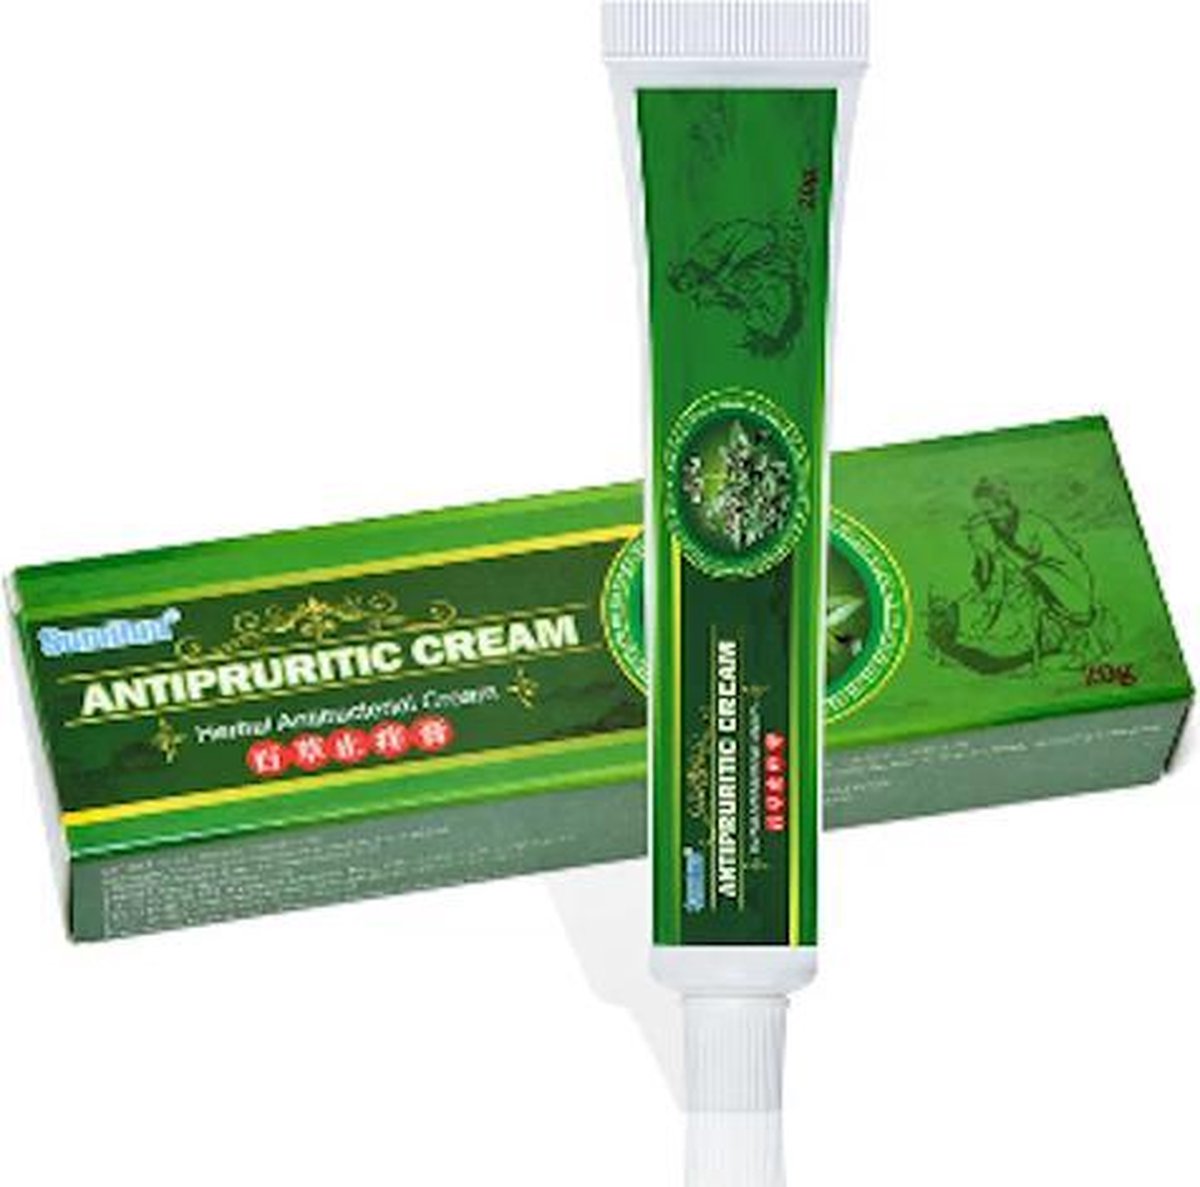 Sumifun Antipruritic cream